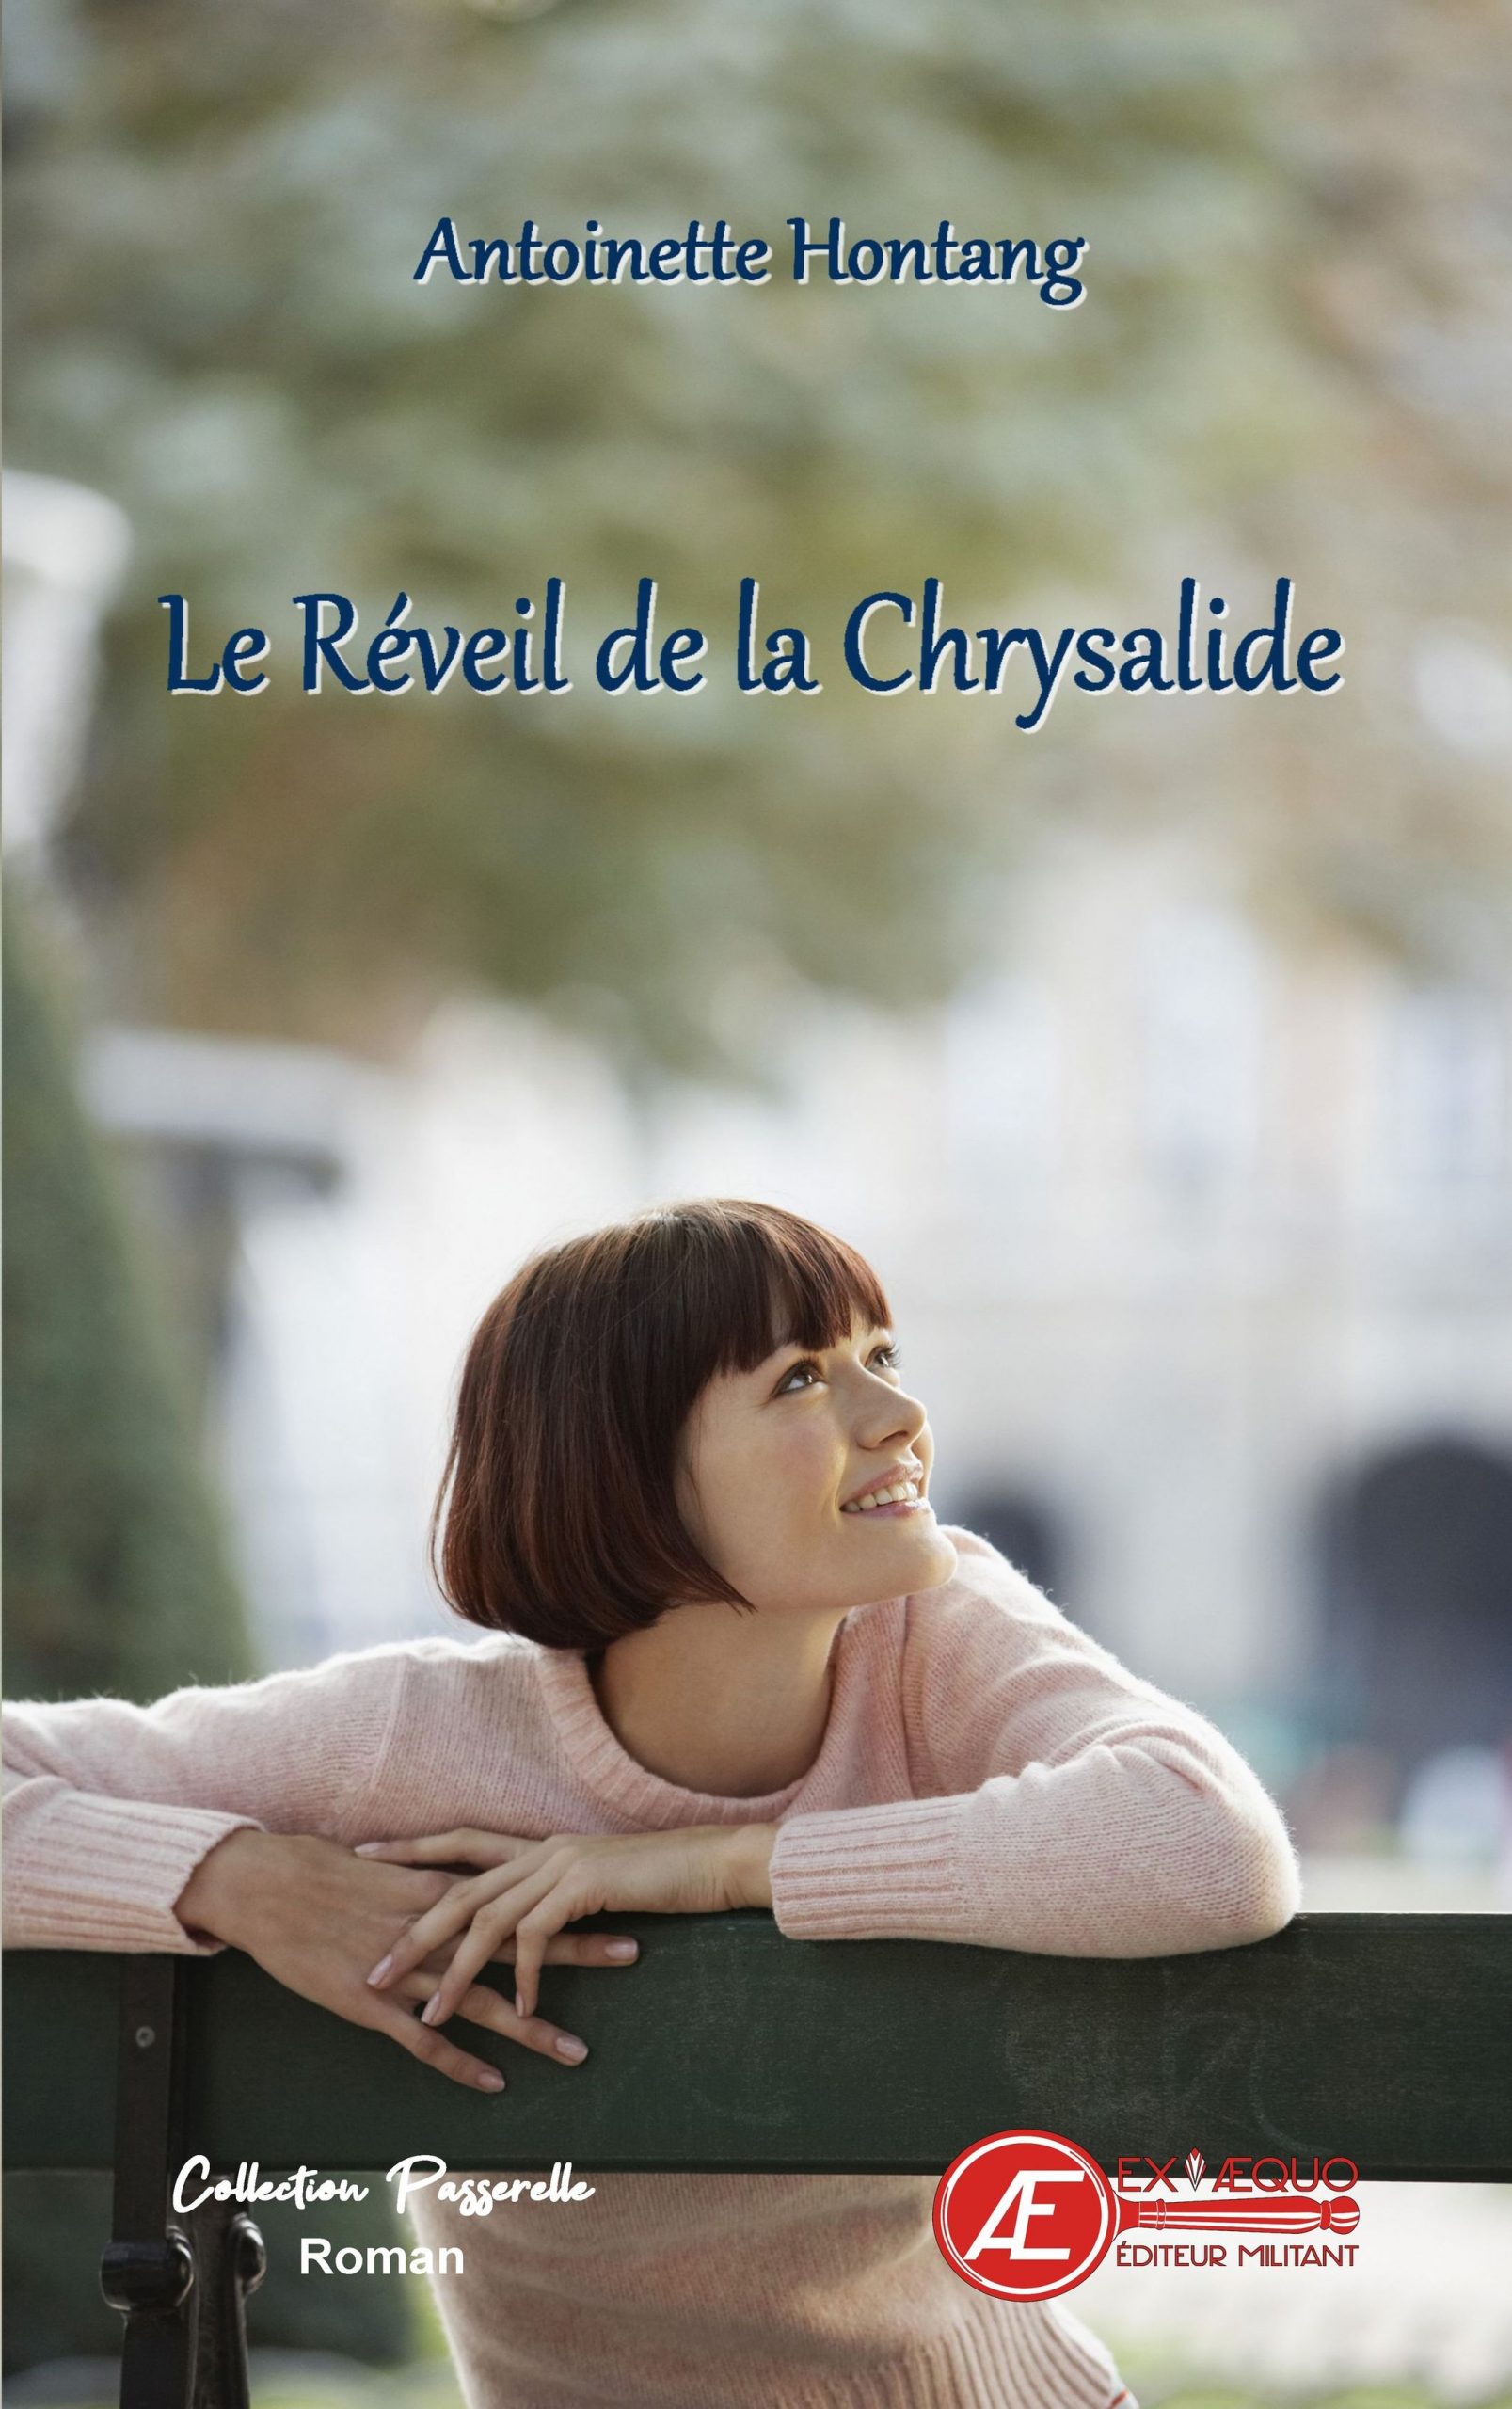 You are currently viewing Le réveil de la chrysalide, d’Antoinette Hontang